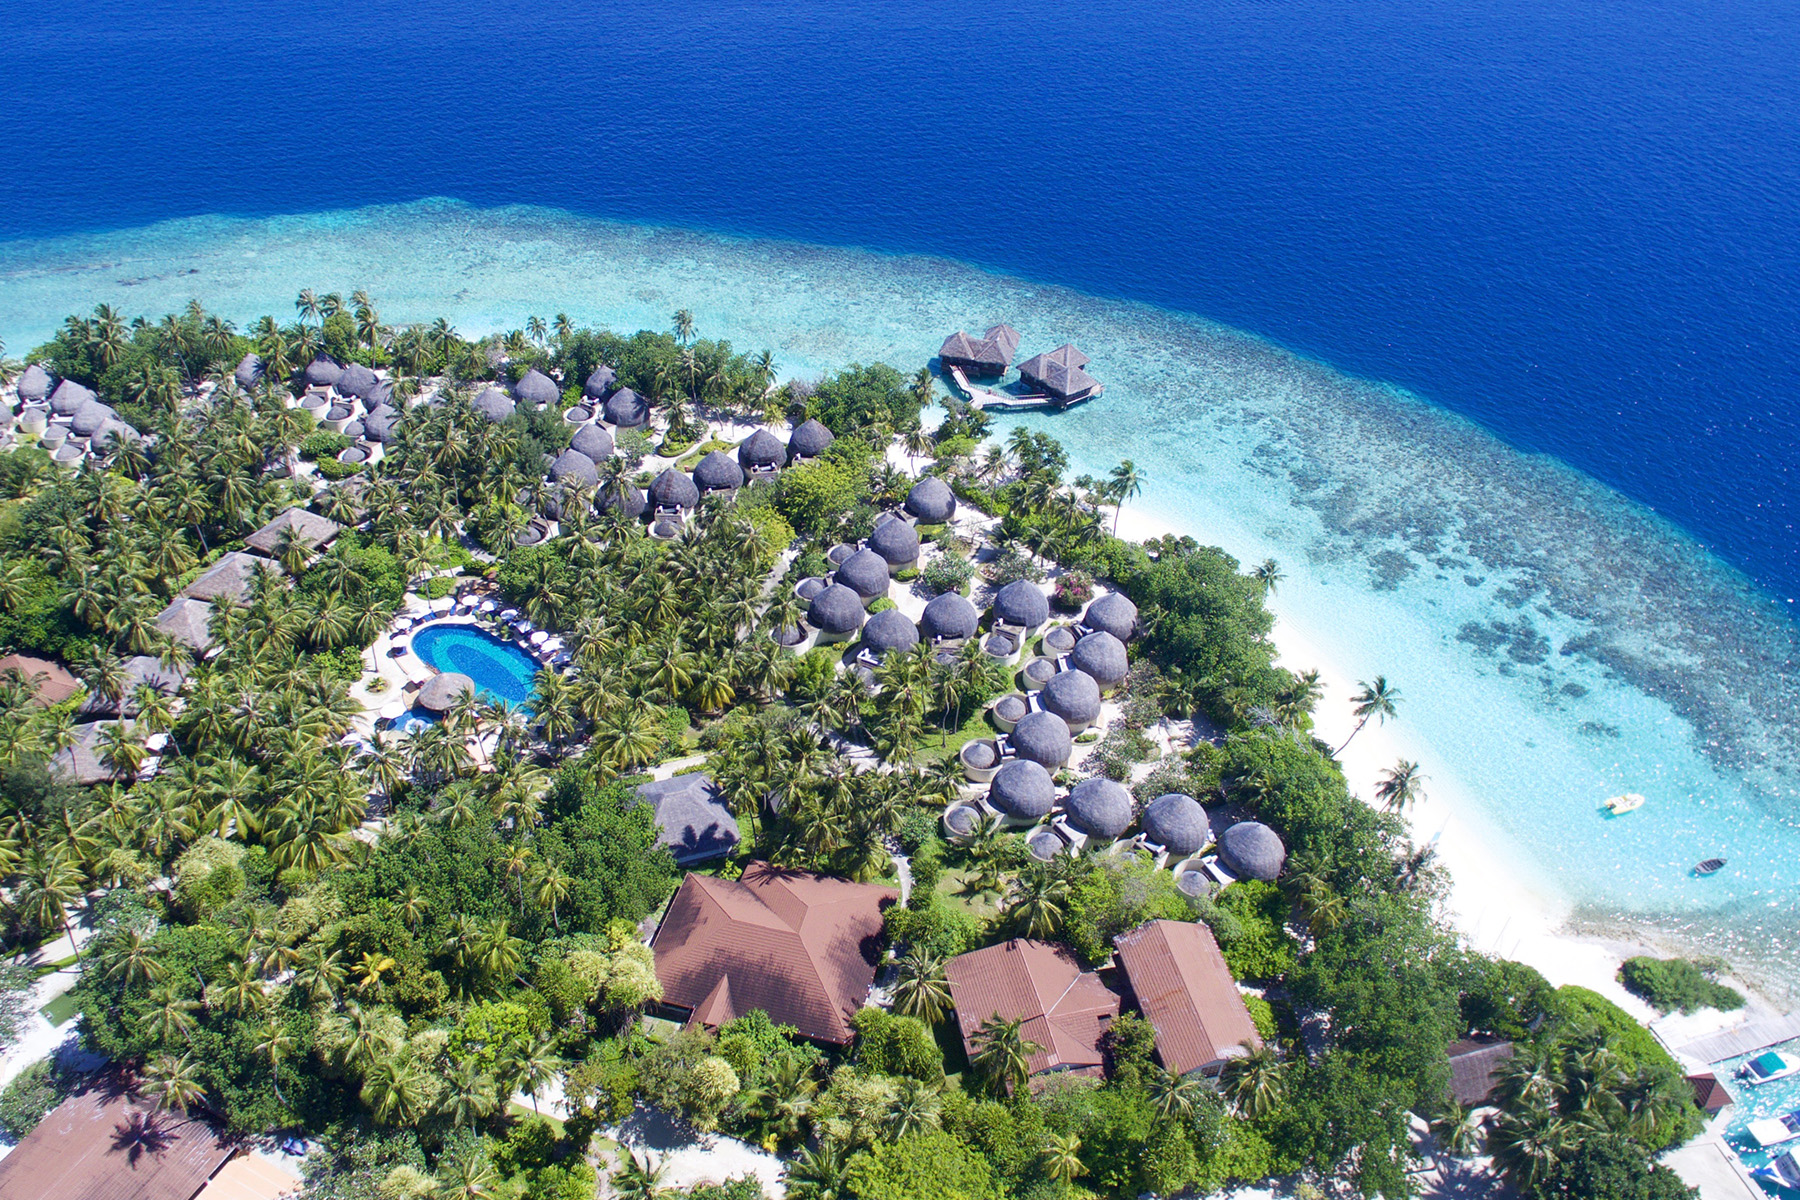 Bandos island. Отель Bandos Island Resort & Spa 4*. Остров Bandos Мальдивы. Bandos Maldives 4 Мальдивы. Bandos Maldives (ex. Bandos Island Resort) 4* Мальдивы,.